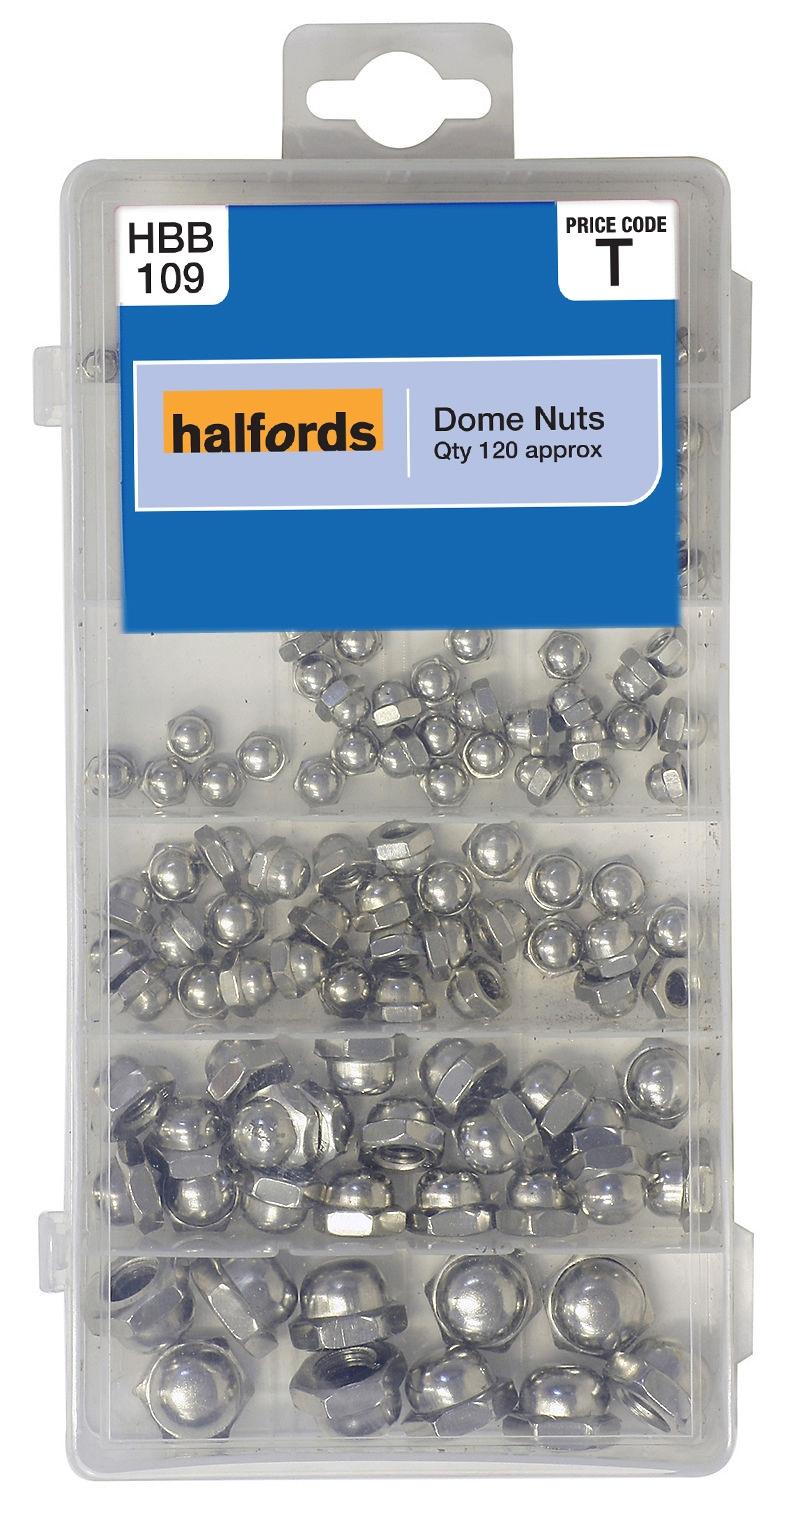 Halfords Dome Nuts